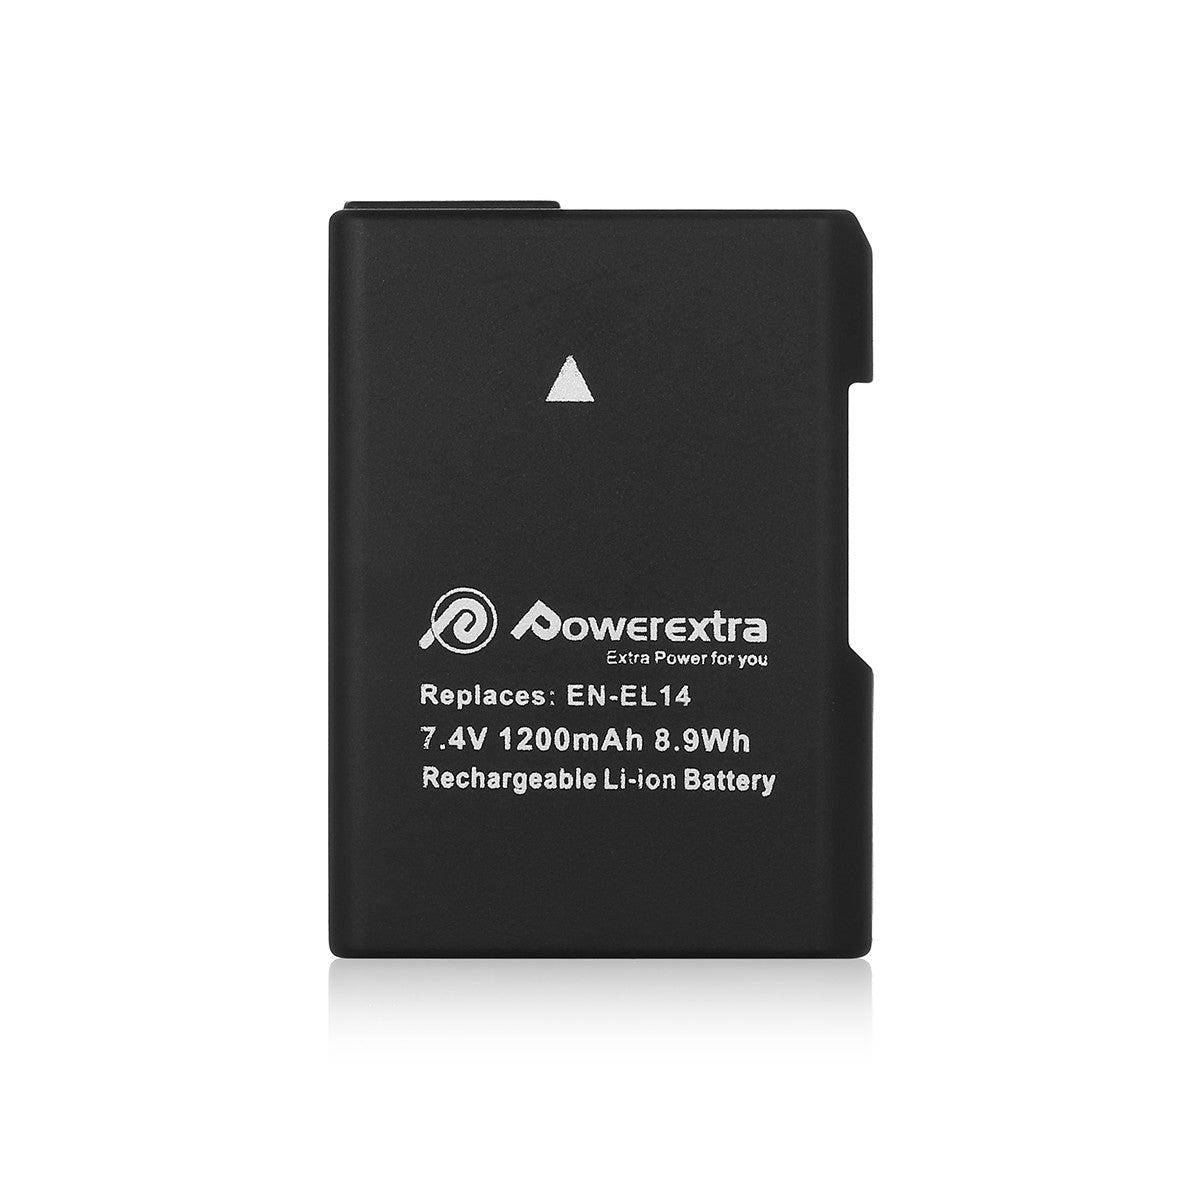 Powerextra EN-EL14 Replacement Battery for Nikon